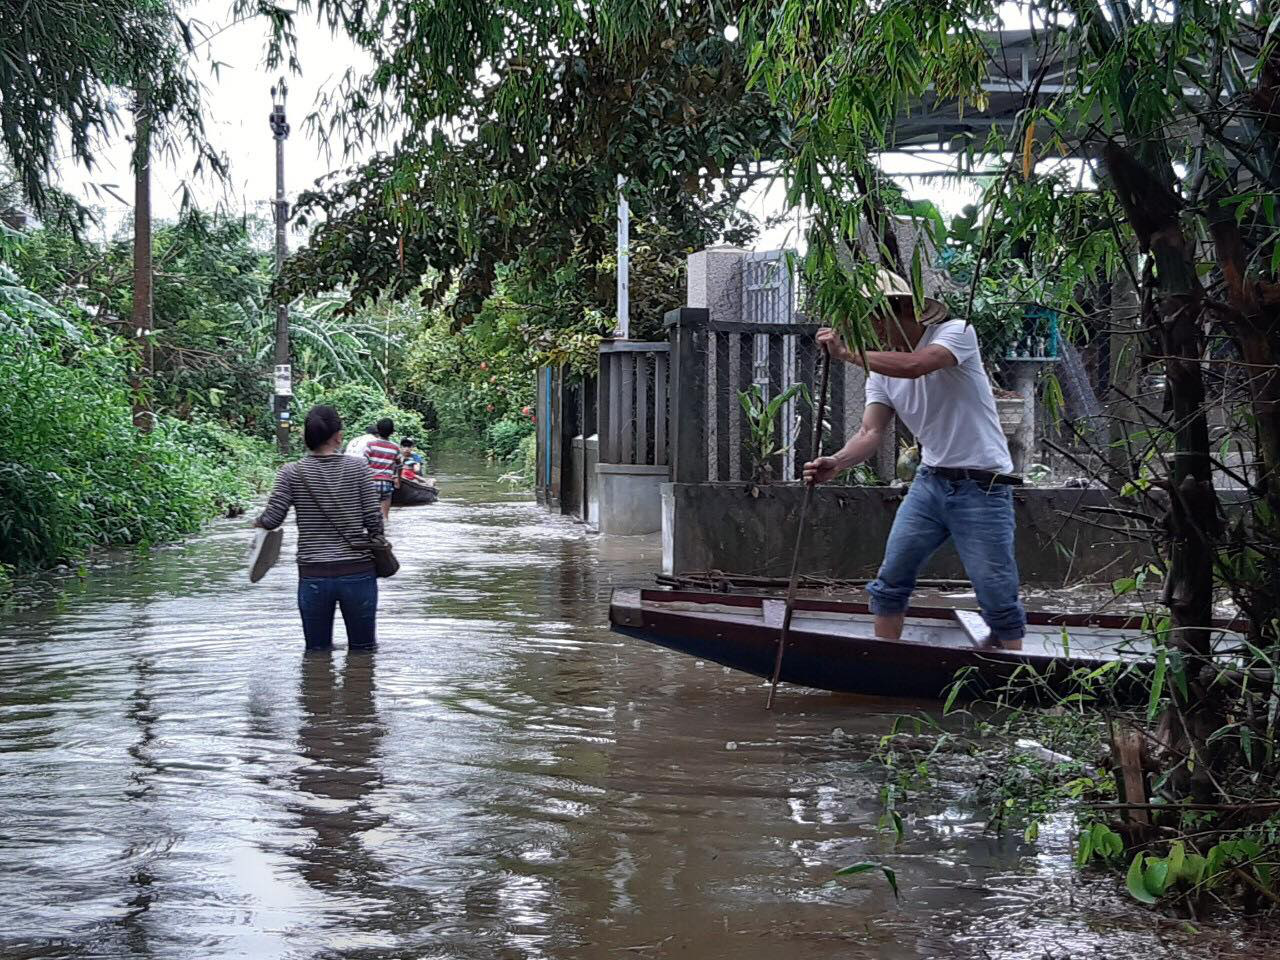 Mưa lũ ở Thừa Thiên - Huế: Người dân đi xuồng trên đường, thủy điện nâng mức xả lũ - Ảnh 4.